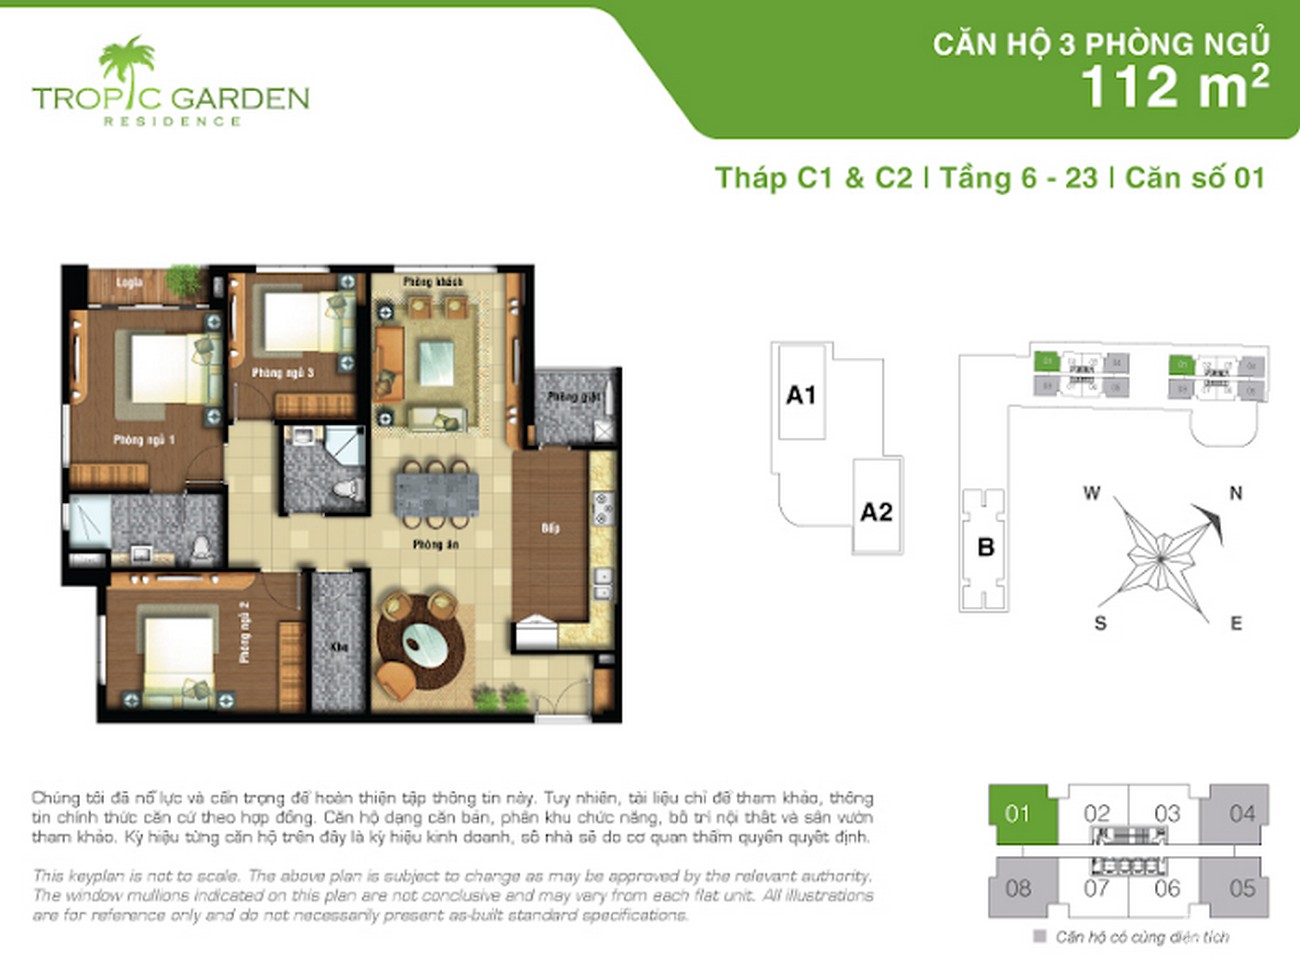 Thiết kế dự án căn hộ chung cư Tropic Garden Quận 2 Đường 66 chủ đầu tư Novaland